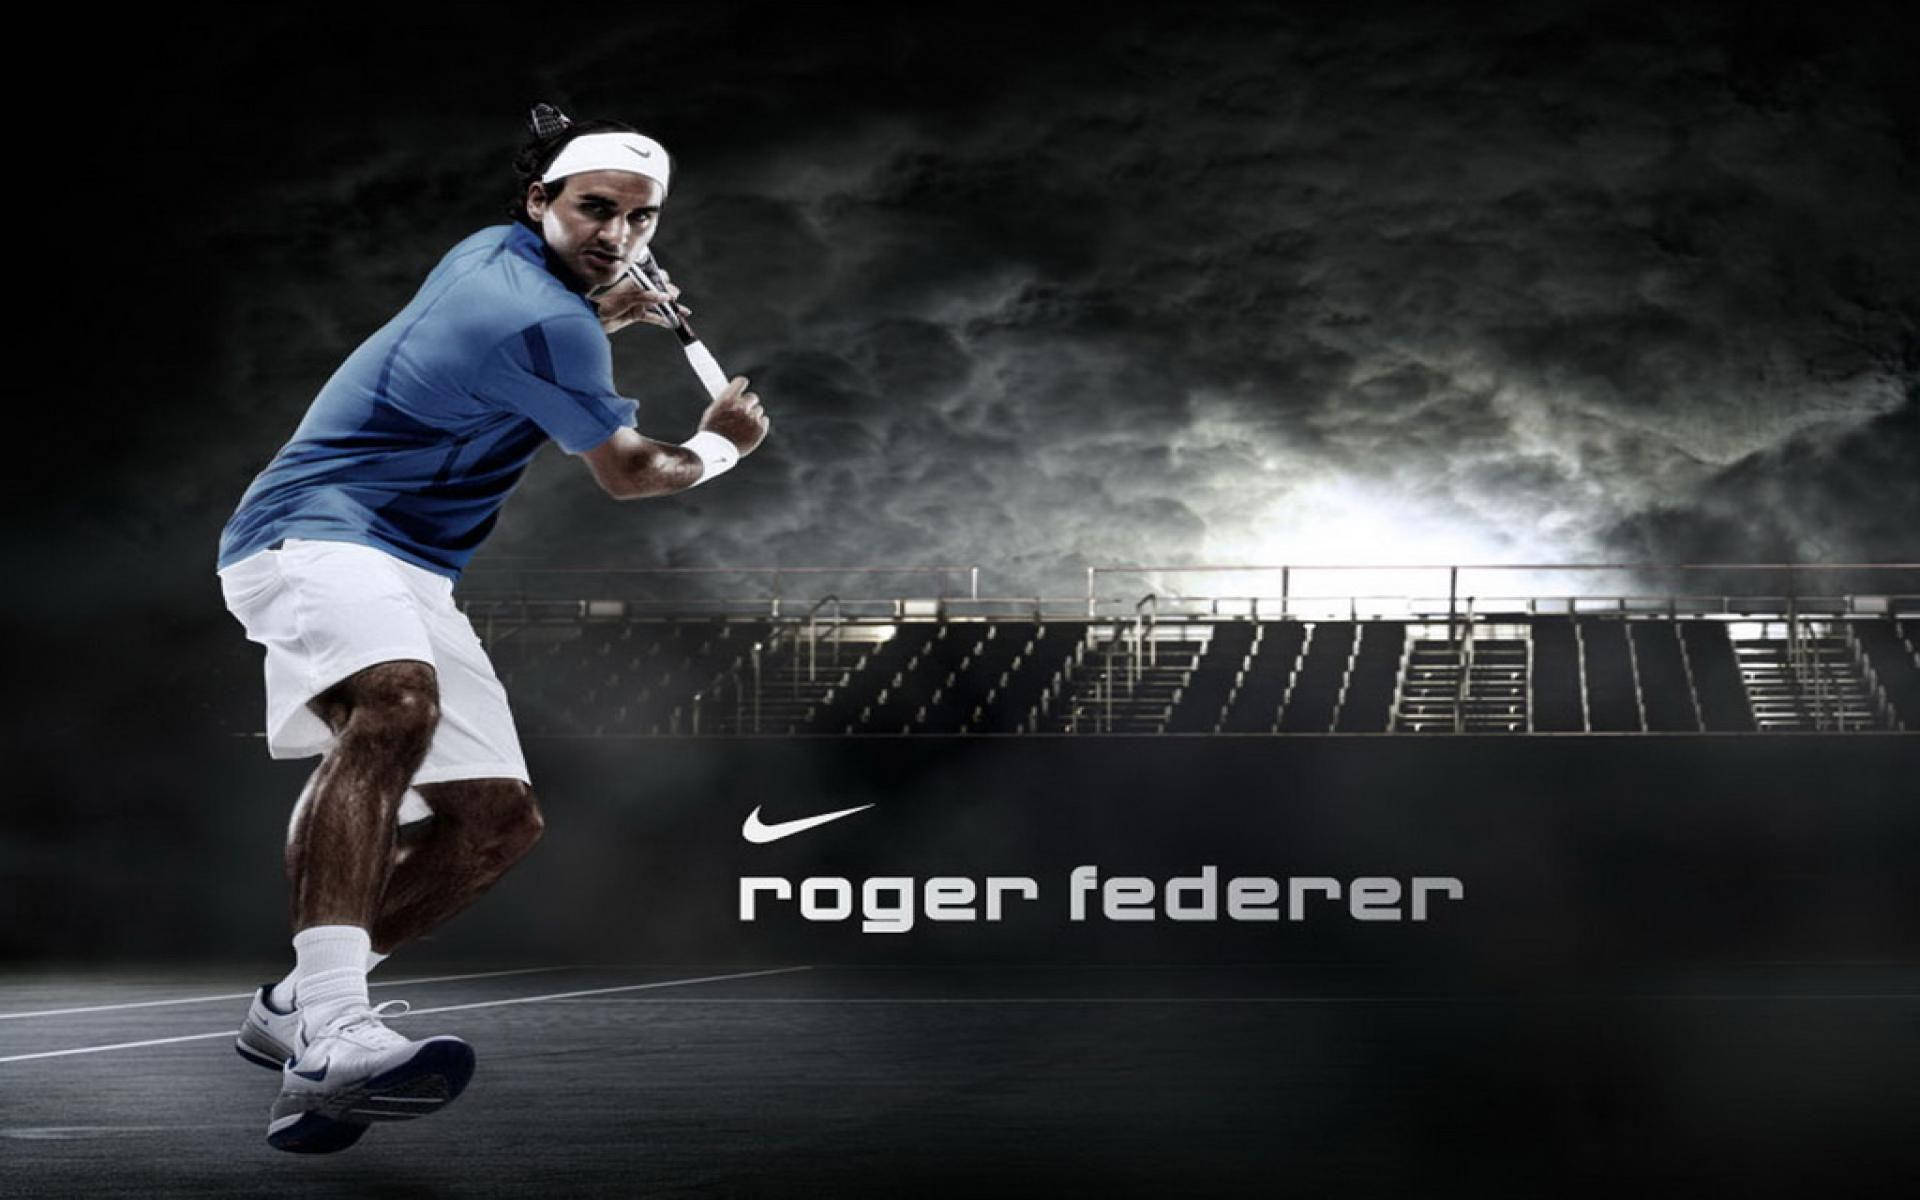 Roger Federer Nike Poster Background